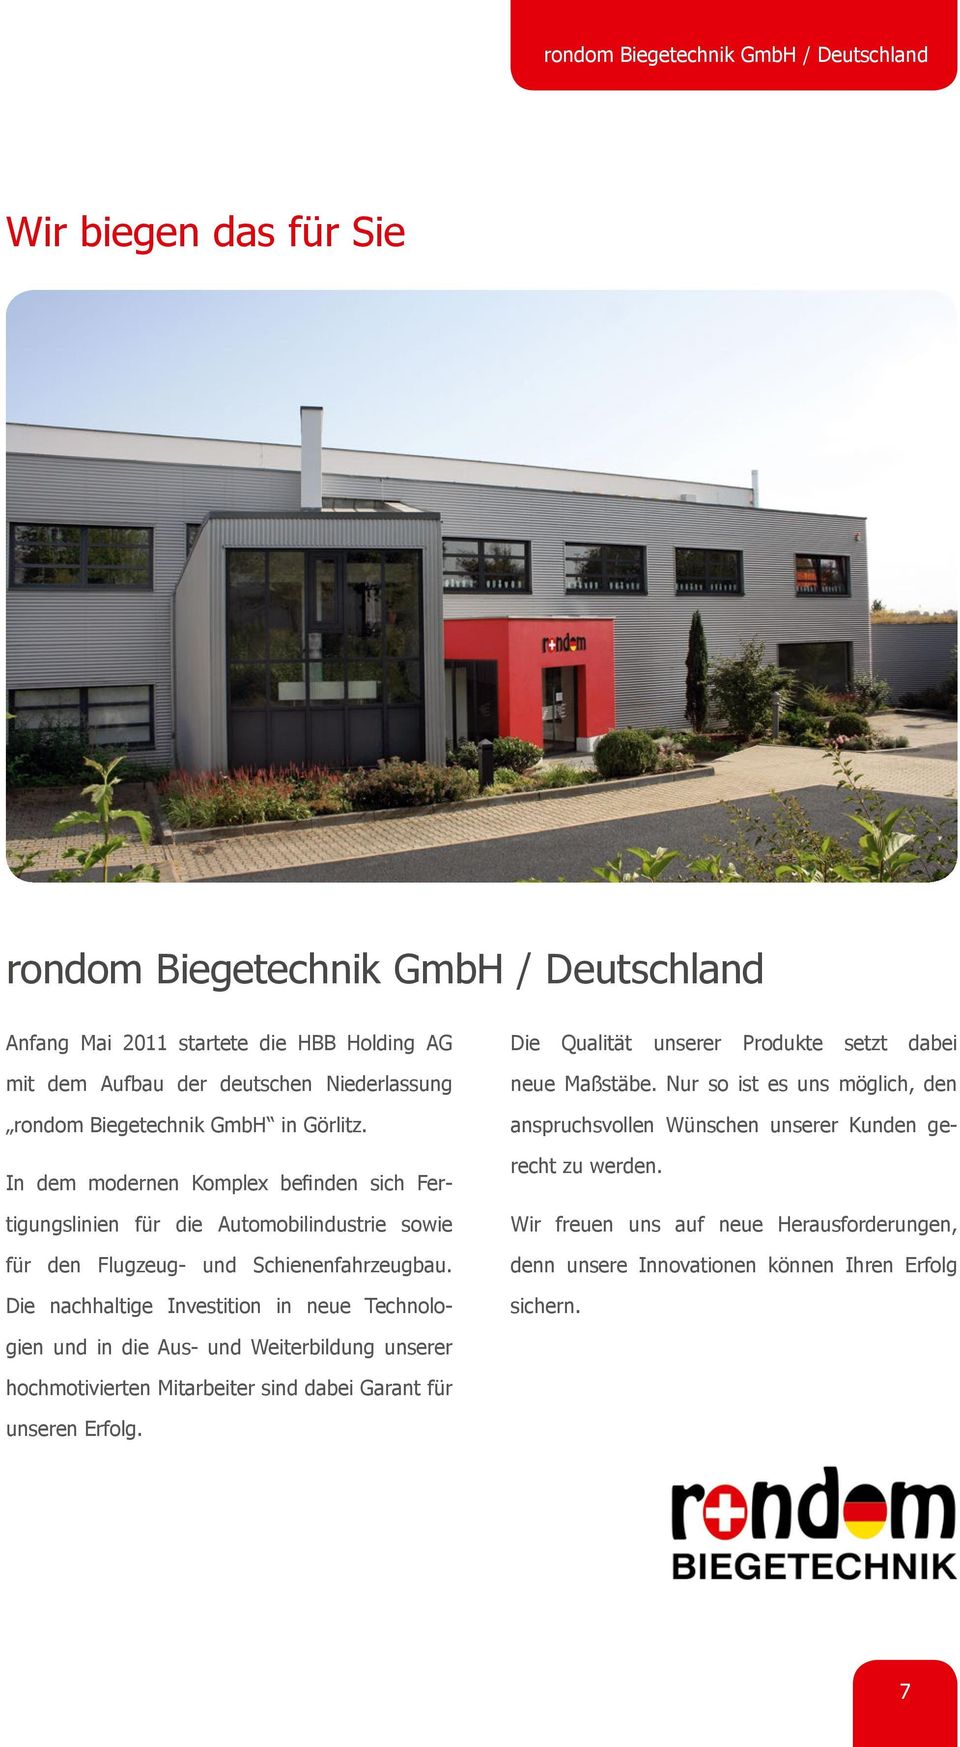 Anfang Mai 2011 startete die HBB Holding AG mit dem Aufbau der deutschen Niederlassung rondom Biegetechnik GmbH in Görlitz.